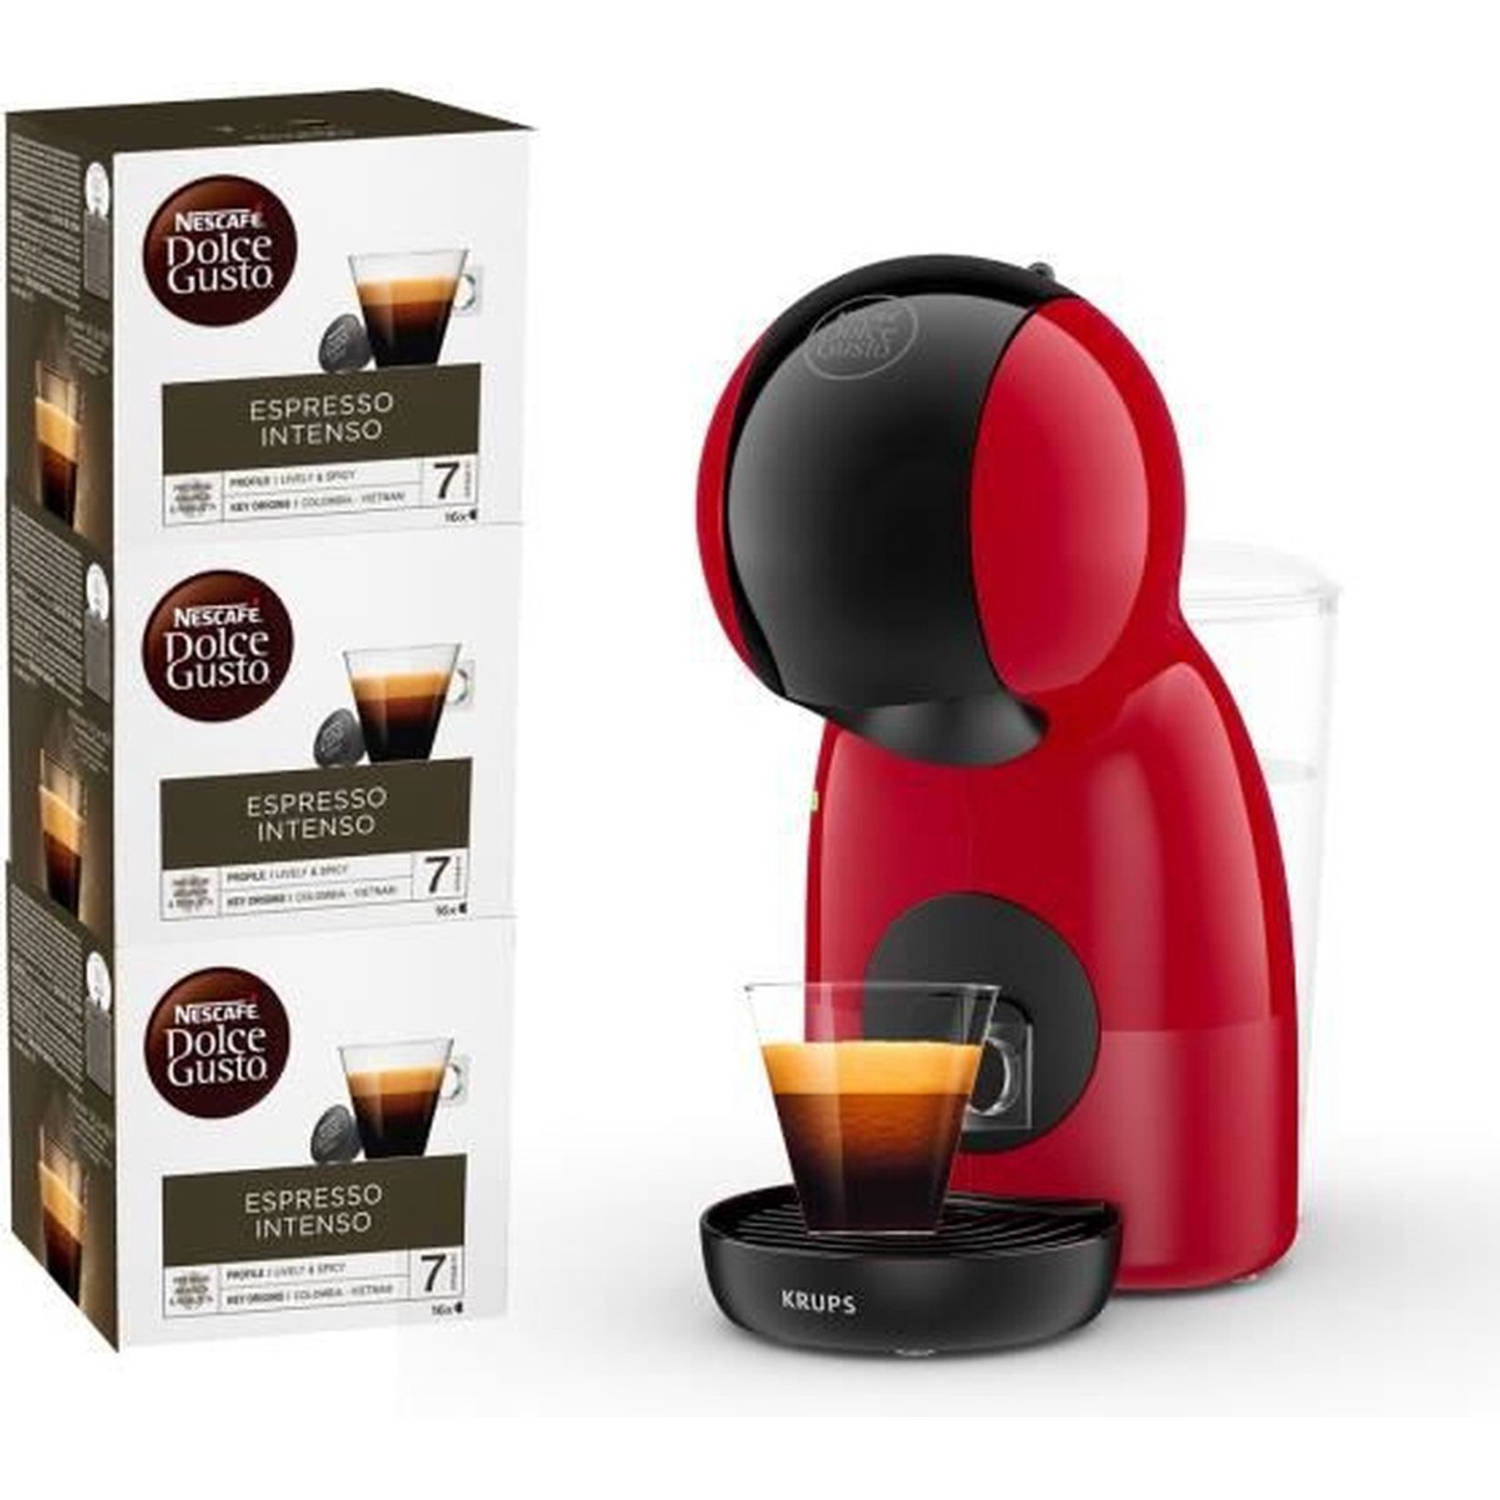 KRUPS Nescafé Dolce Gusto koffiezetapparaat + 3 espressoblikjes, Multi-drink pod koffiezetapparaat, Piccolo XS, Rood YY4580FD